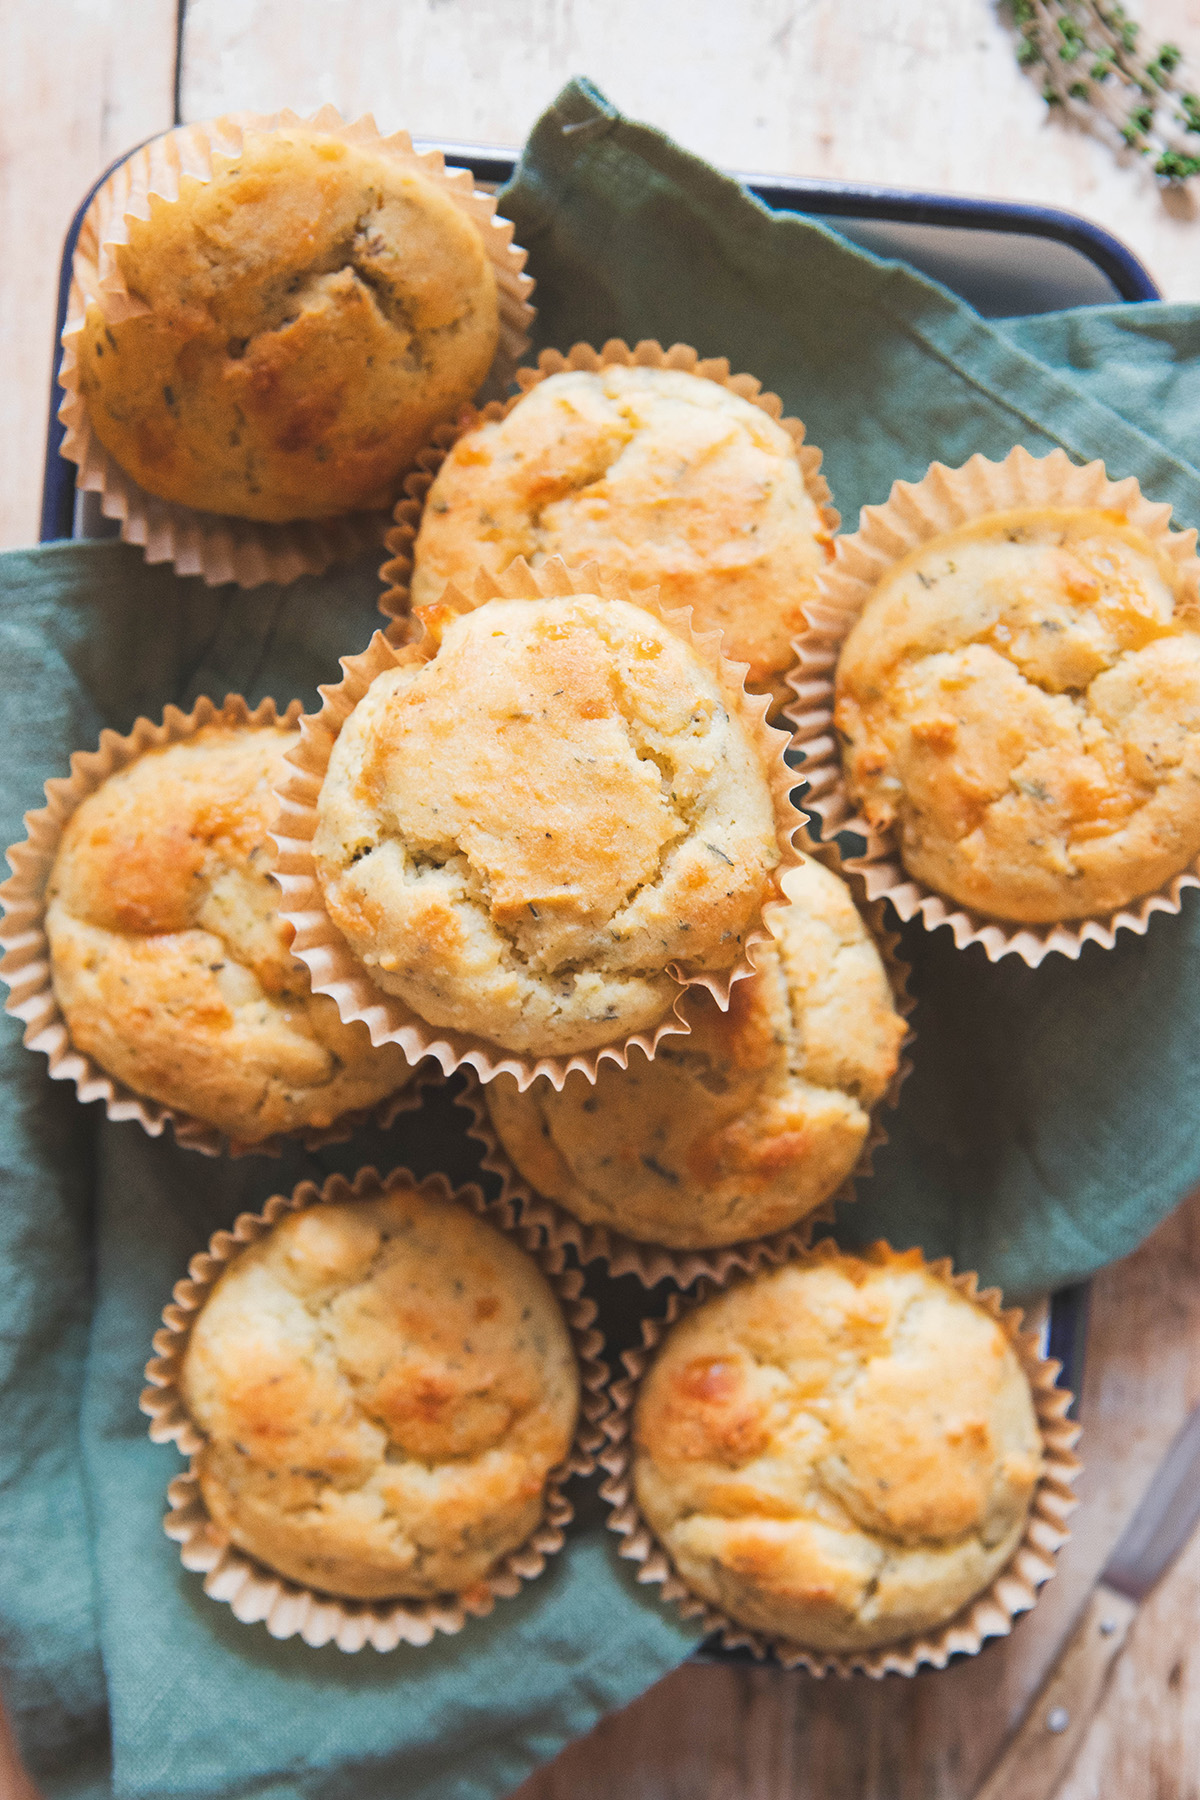 Savory Gluten Free Muffins: Cheddar Breakfast Muffins